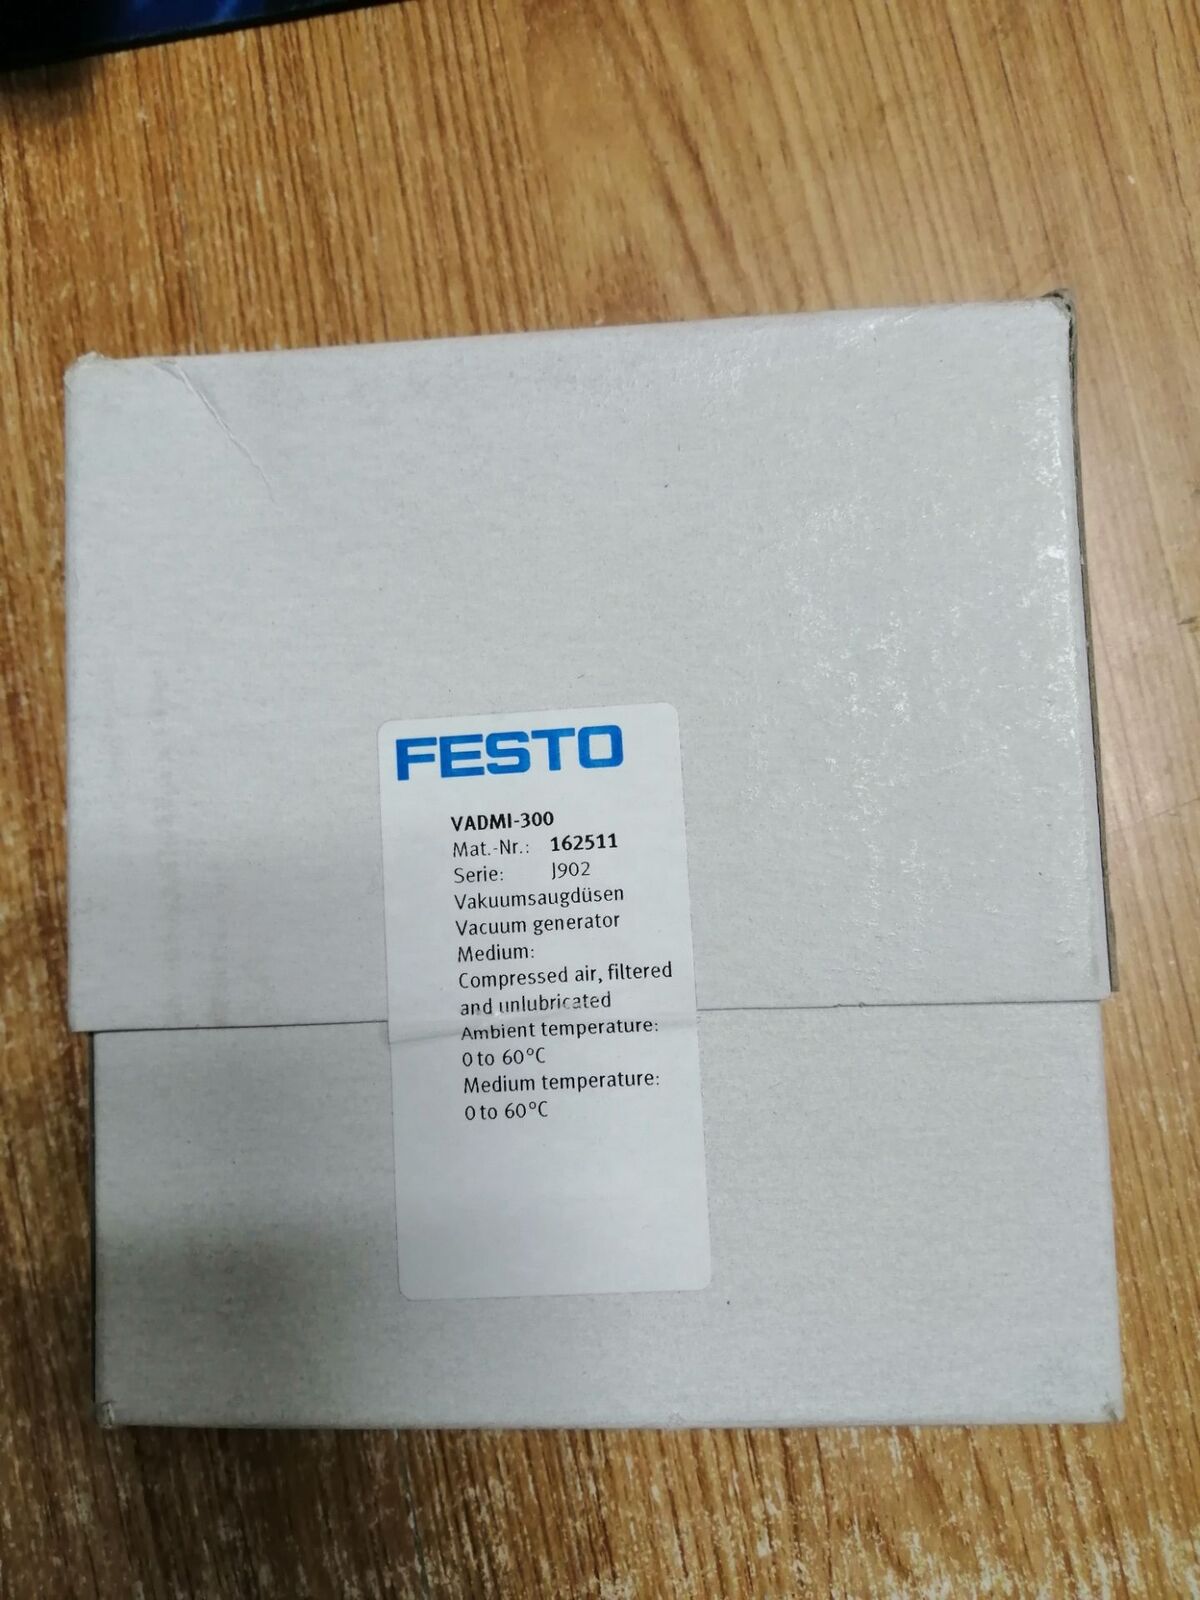 1pcs new for Festo Vacuum Generator VADMI-300 162511